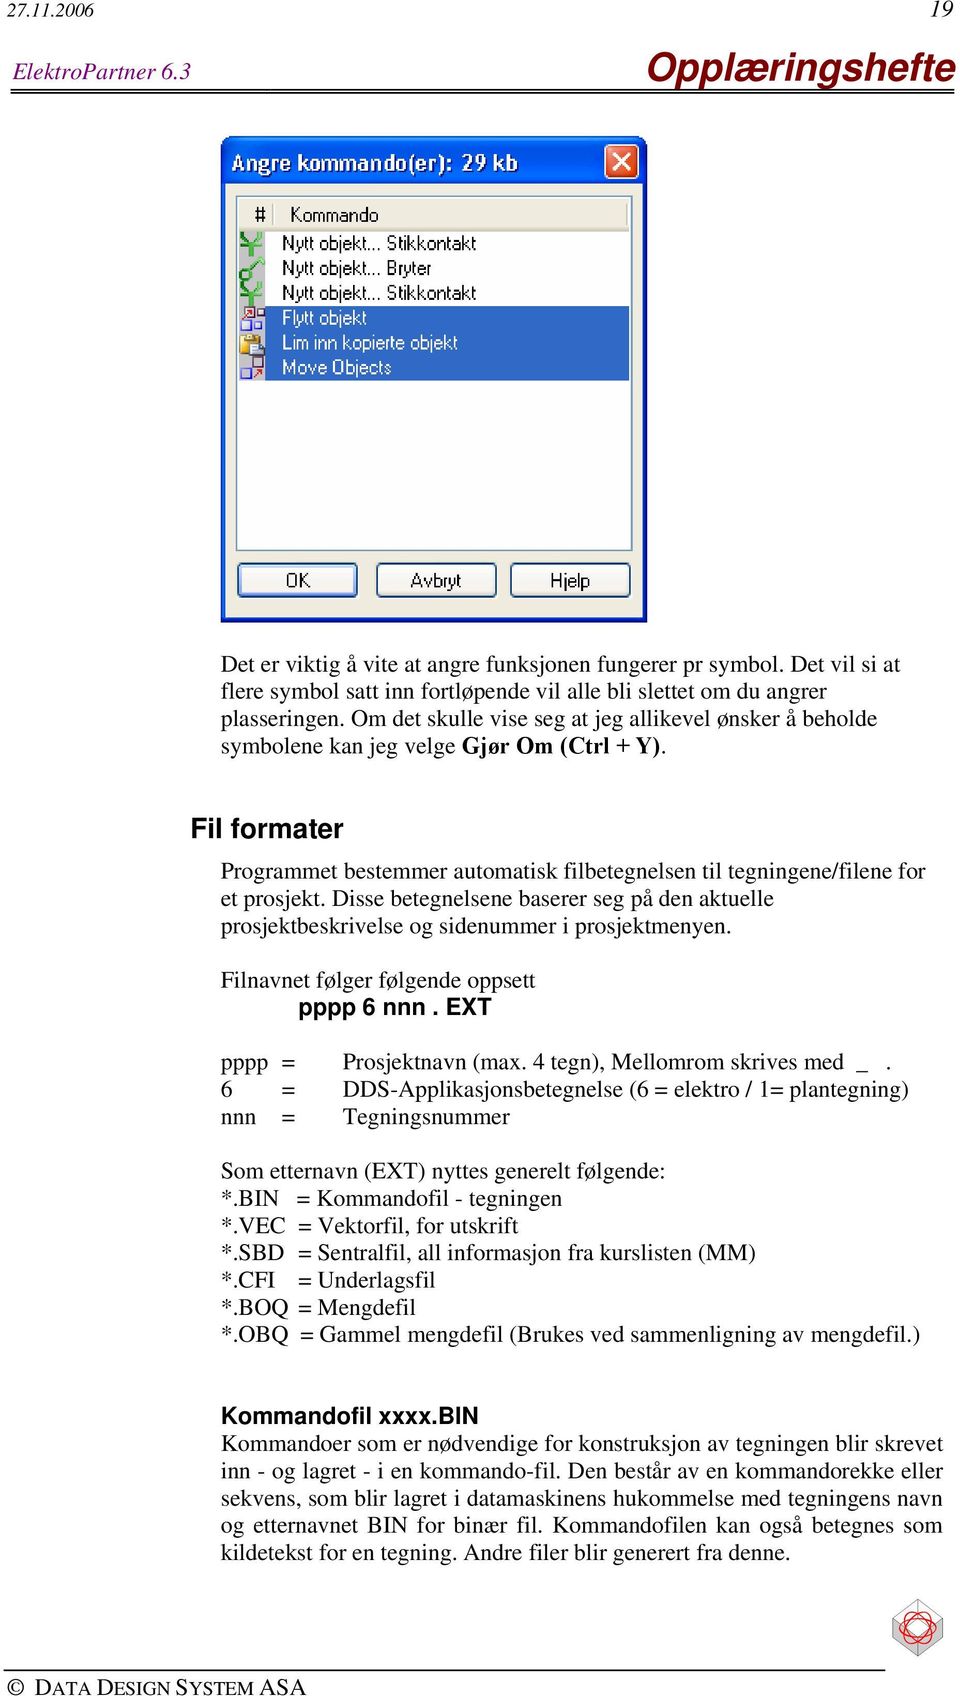 Fil formater Programmet bestemmer automatisk filbetegnelsen til tegningene/filene for et prosjekt. Disse betegnelsene baserer seg på den aktuelle prosjektbeskrivelse og sidenummer i prosjektmenyen.